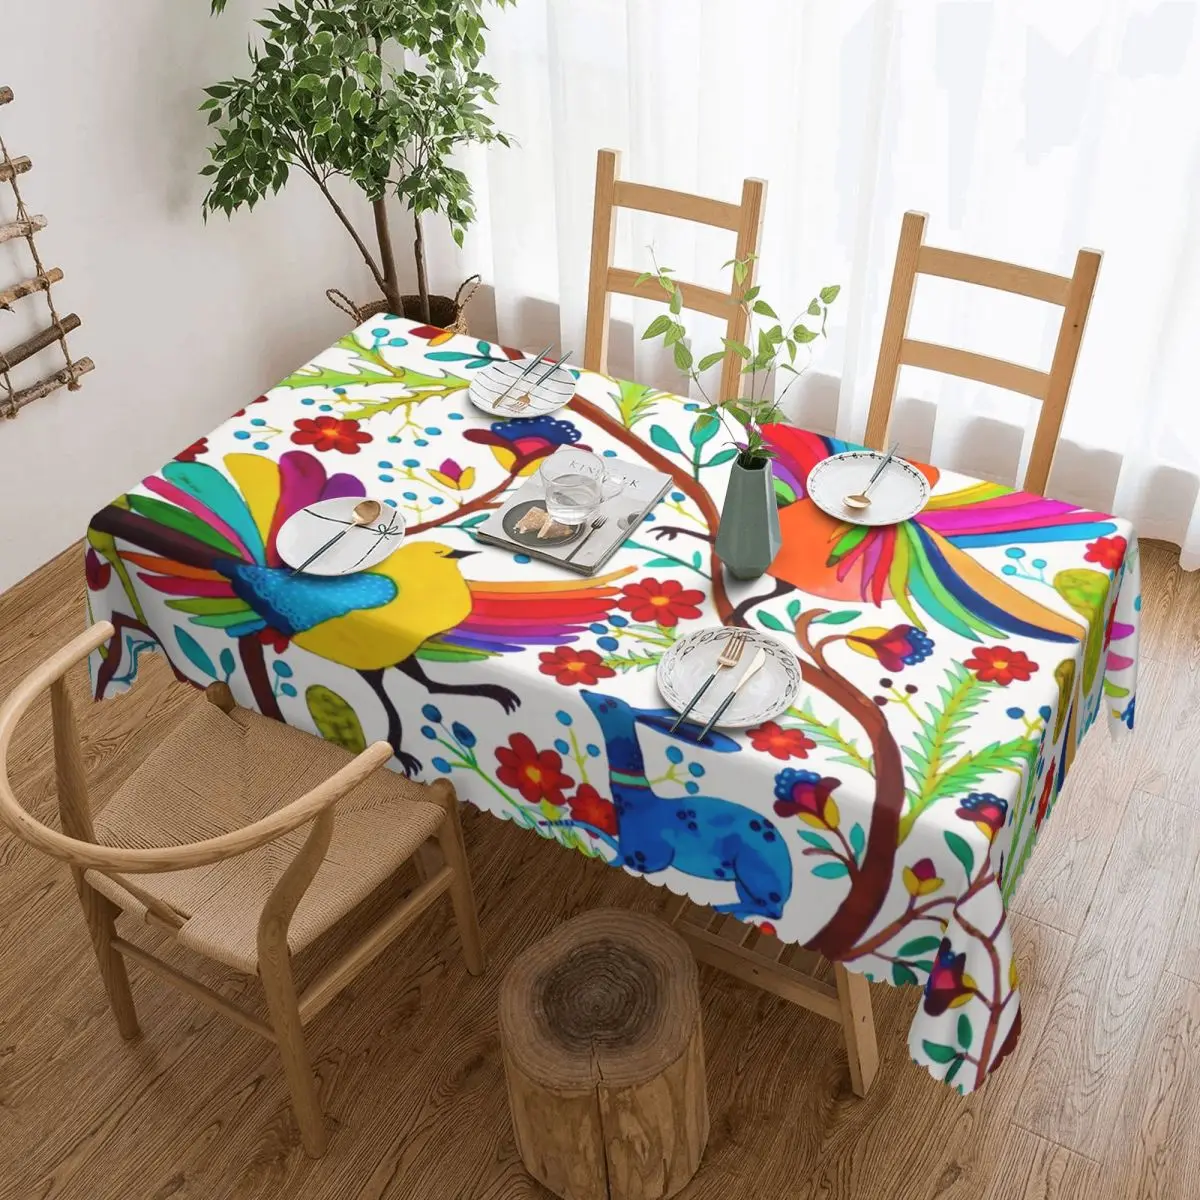 

Мексиканская прямоугольная скатерть Otomi с цветами Amate, маслостойкая Скатерть, текстильные скатерти для стола в мексиканском стиле